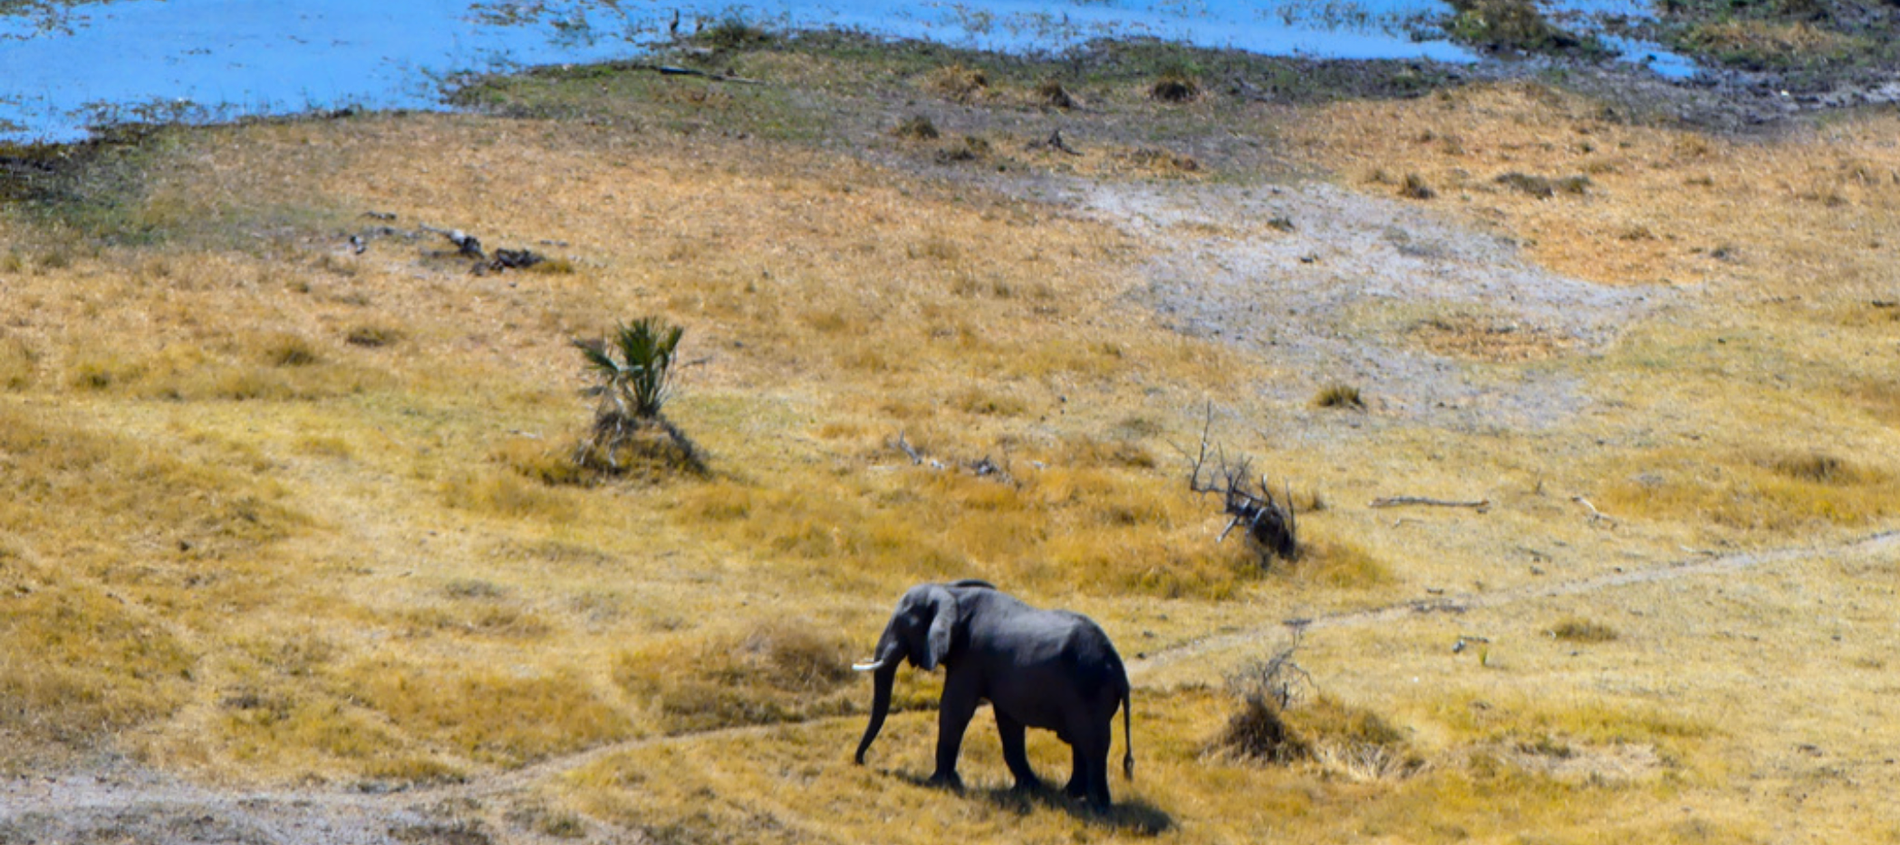 Deltat Okavango, där nu hundratals elefanter påträffats döda. Arkivbild.